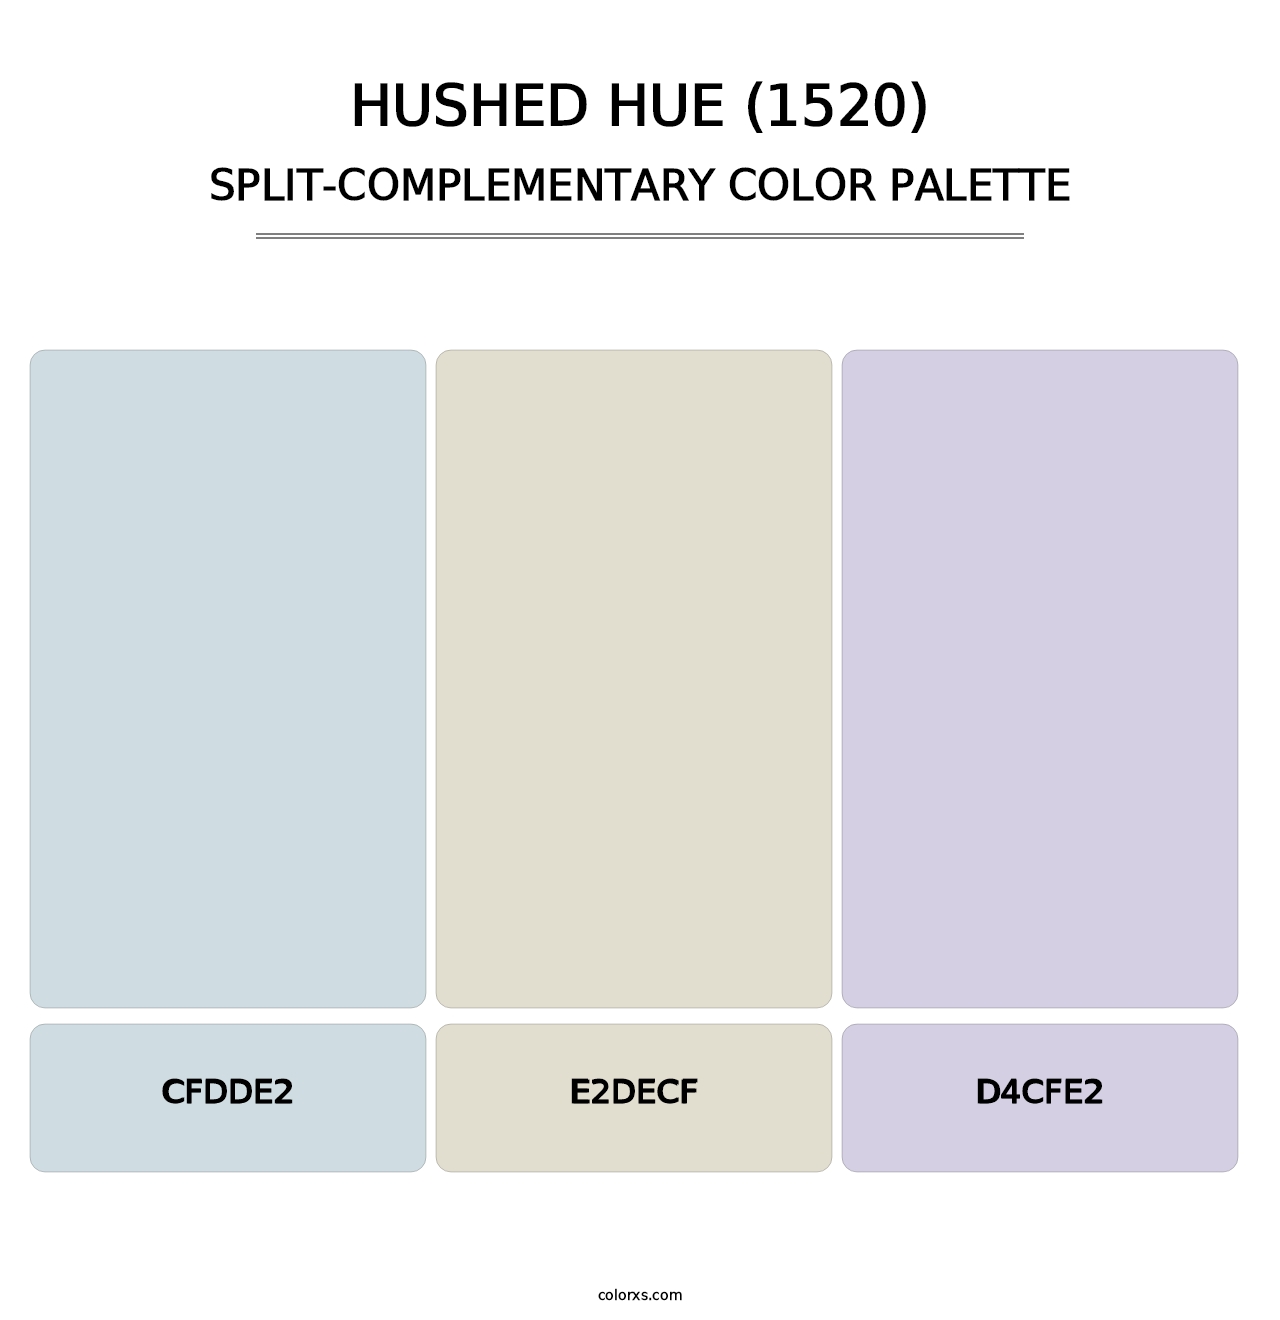 Hushed Hue (1520) - Split-Complementary Color Palette